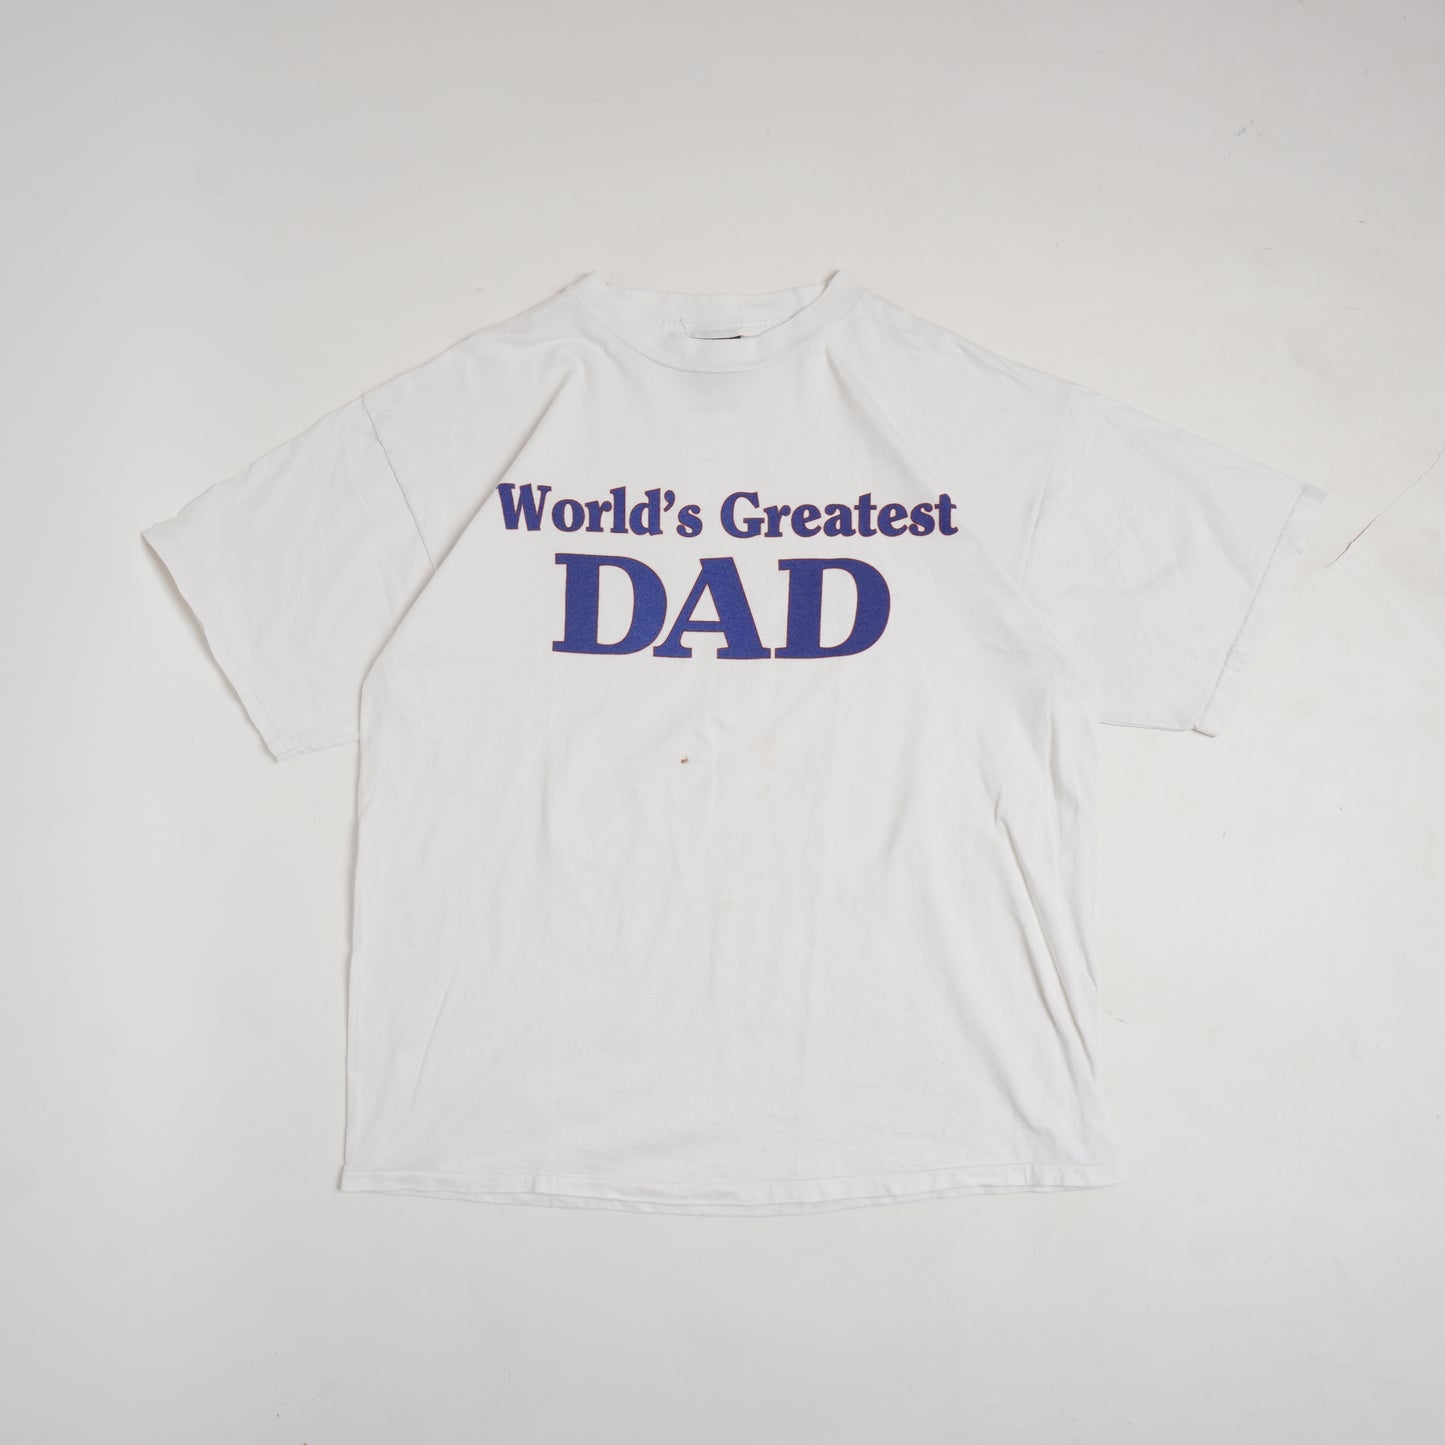 1980s WORLDS GREATEST DAD TSHIRT - XL